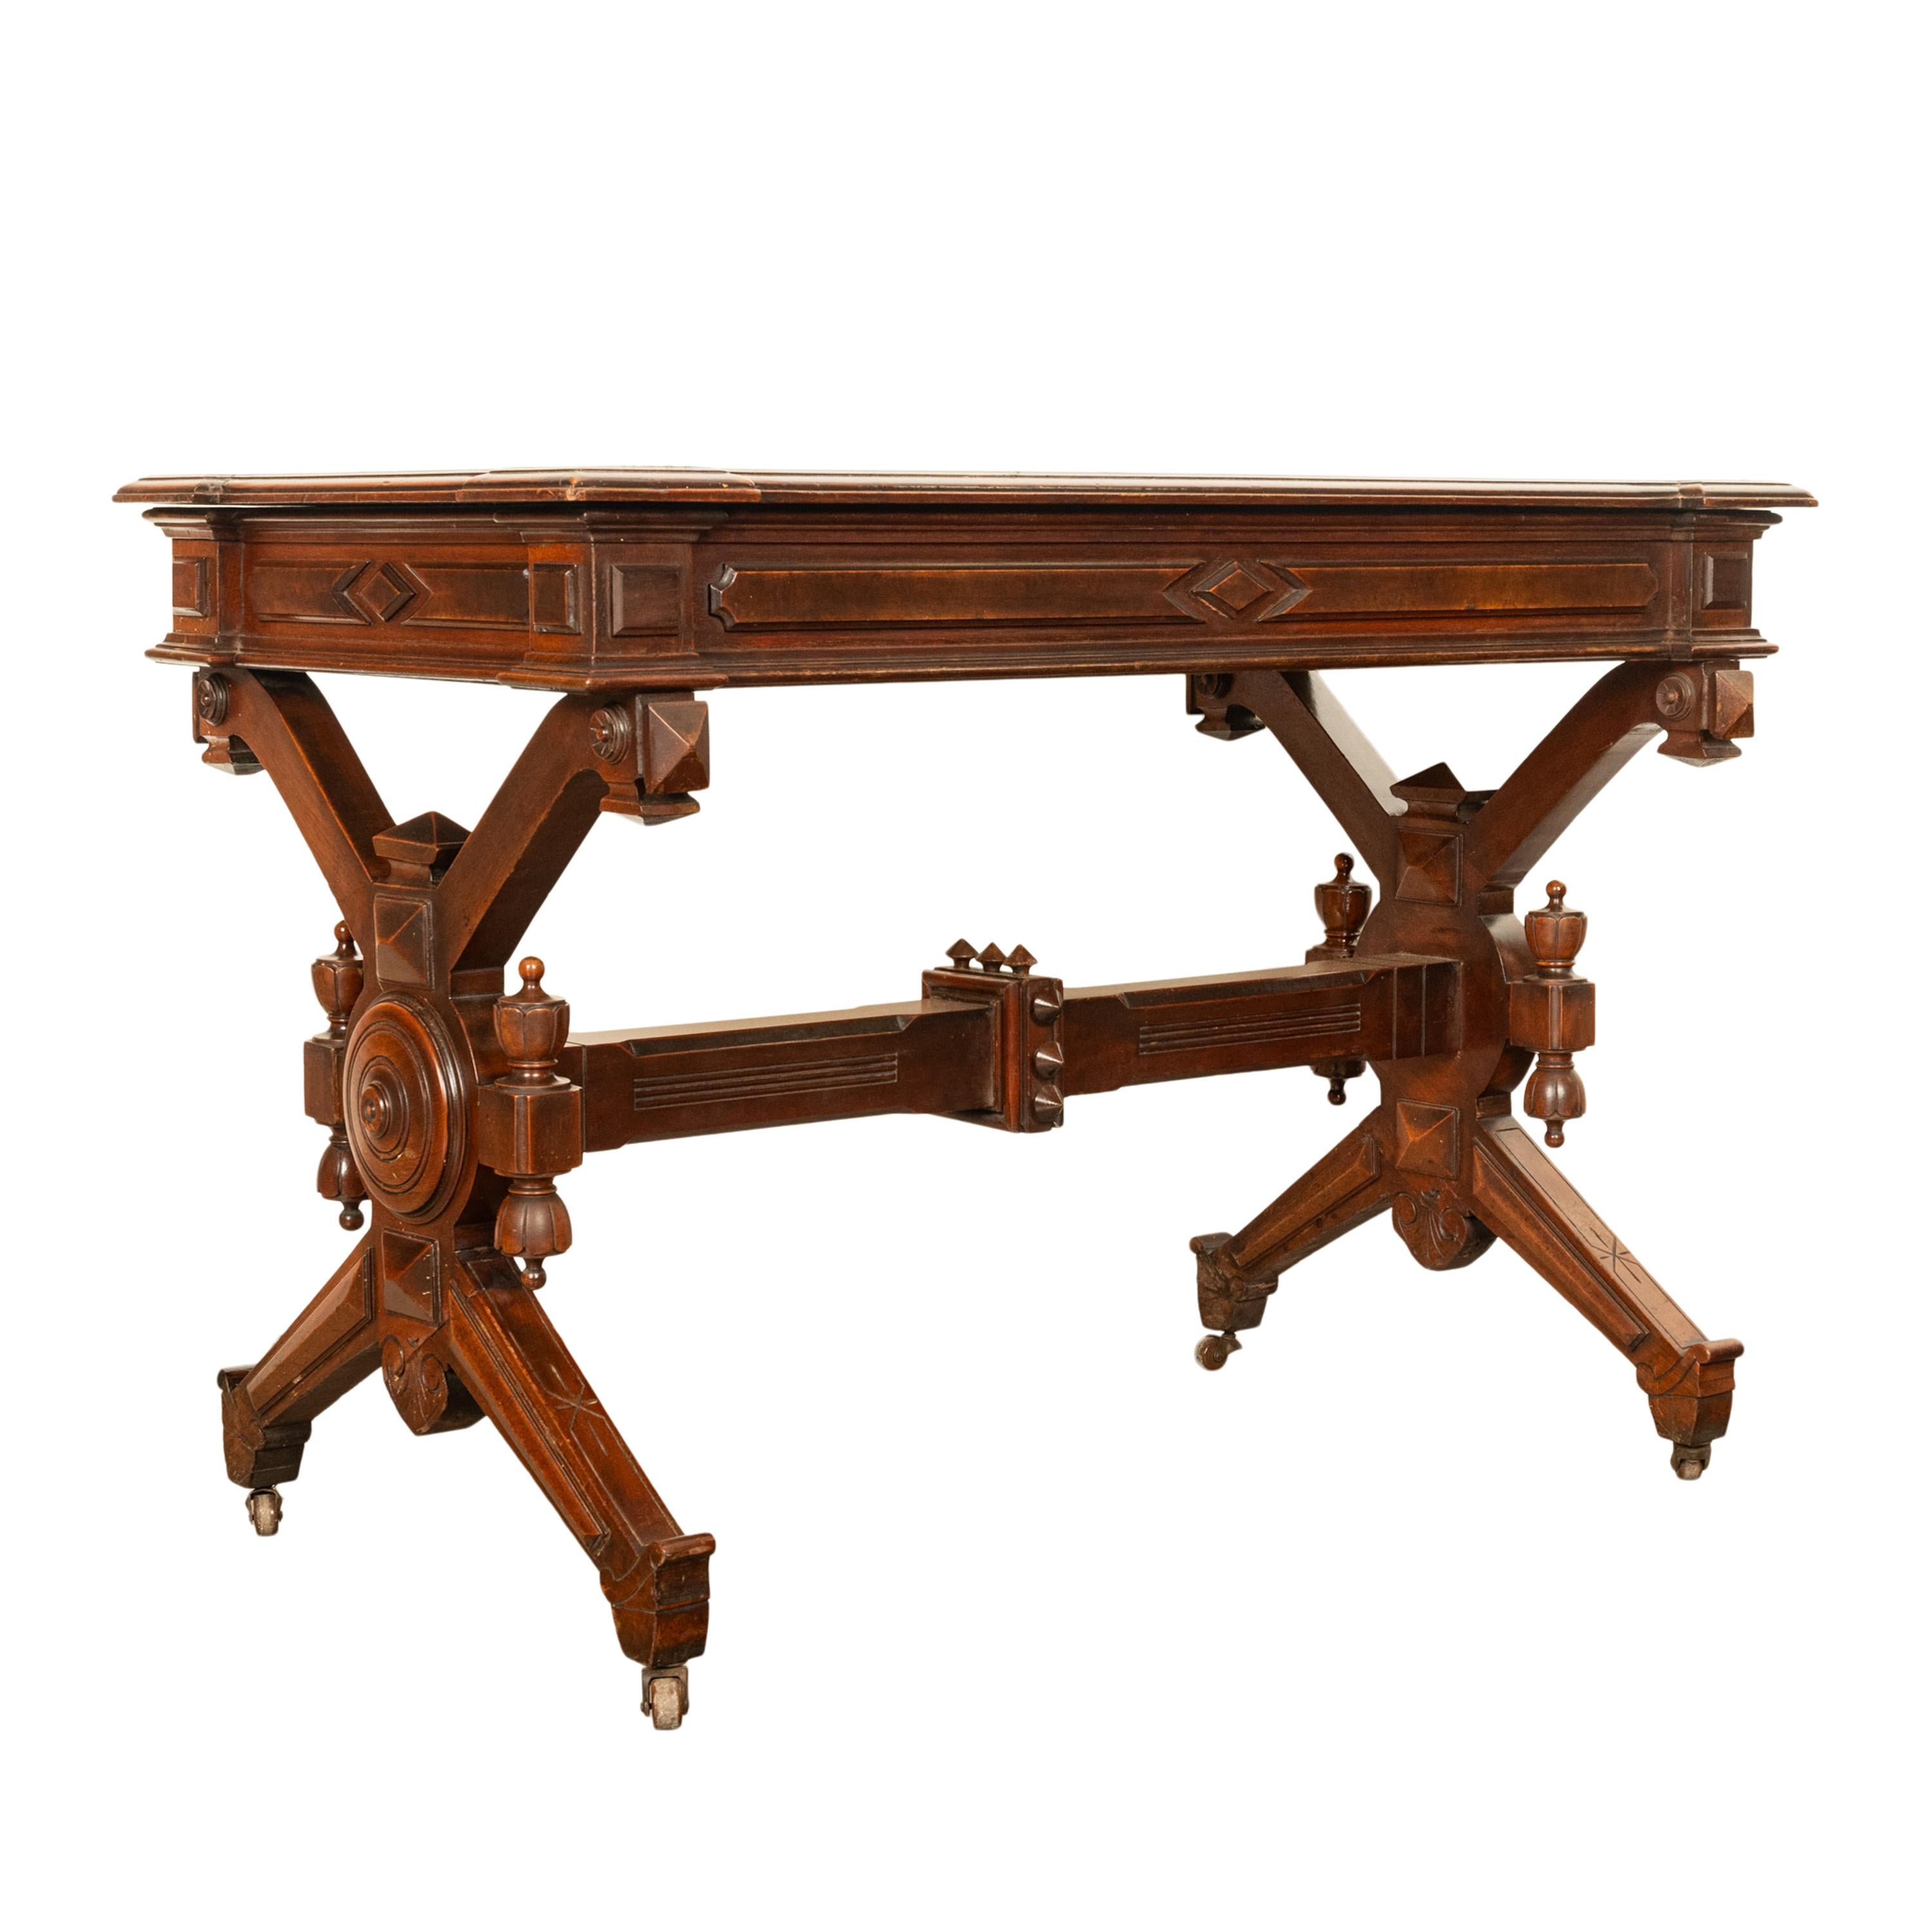 Antique American Walnut Renaissance Revival Aesthetic Movement Desk Table 1875 For Sale 5